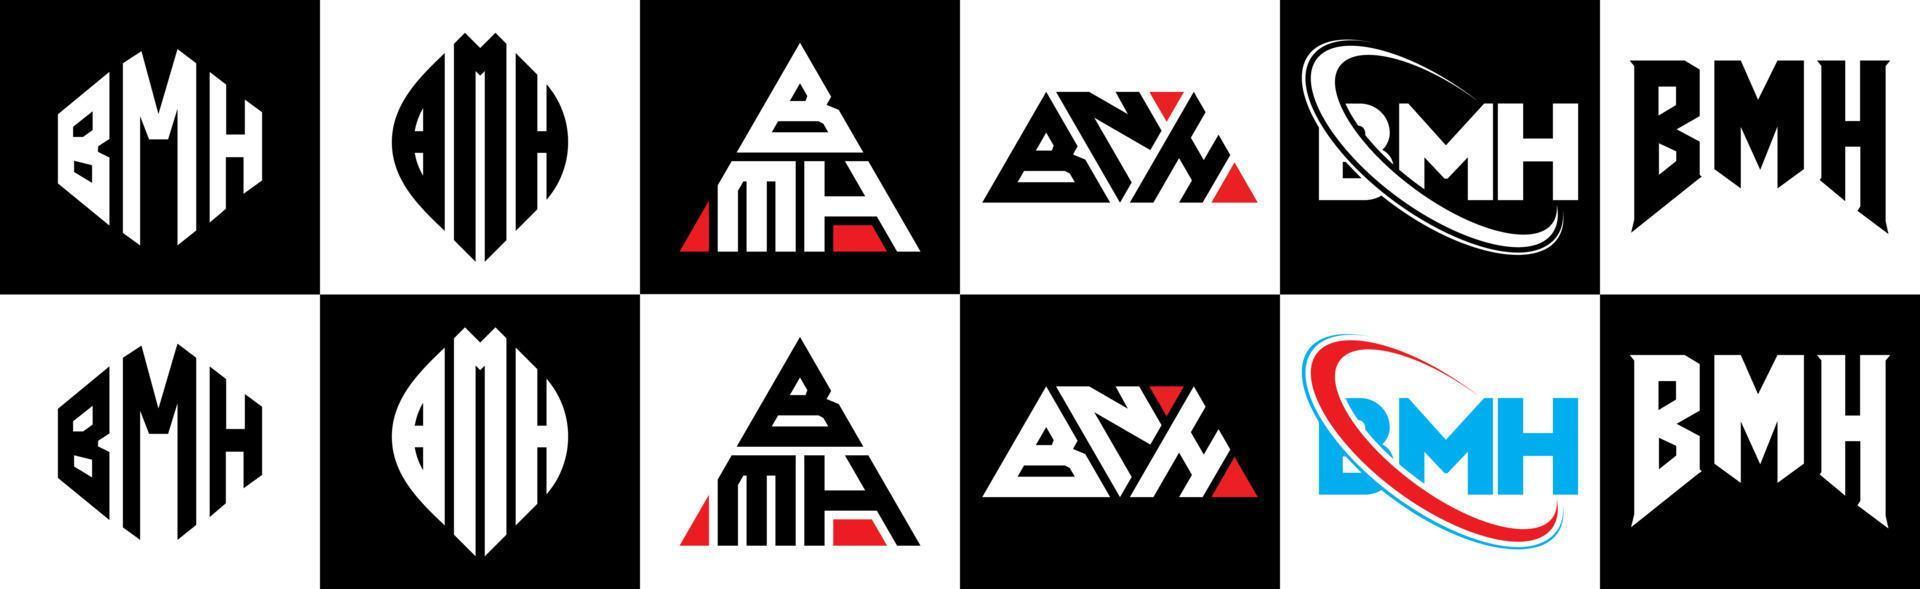 Diseño de logotipo de letra bmh en seis estilos. bmh polígono, círculo, triángulo, hexágono, estilo plano y simple con logotipo de letra de variación de color blanco y negro en una mesa de trabajo. logotipo minimalista y clásico de bmh vector